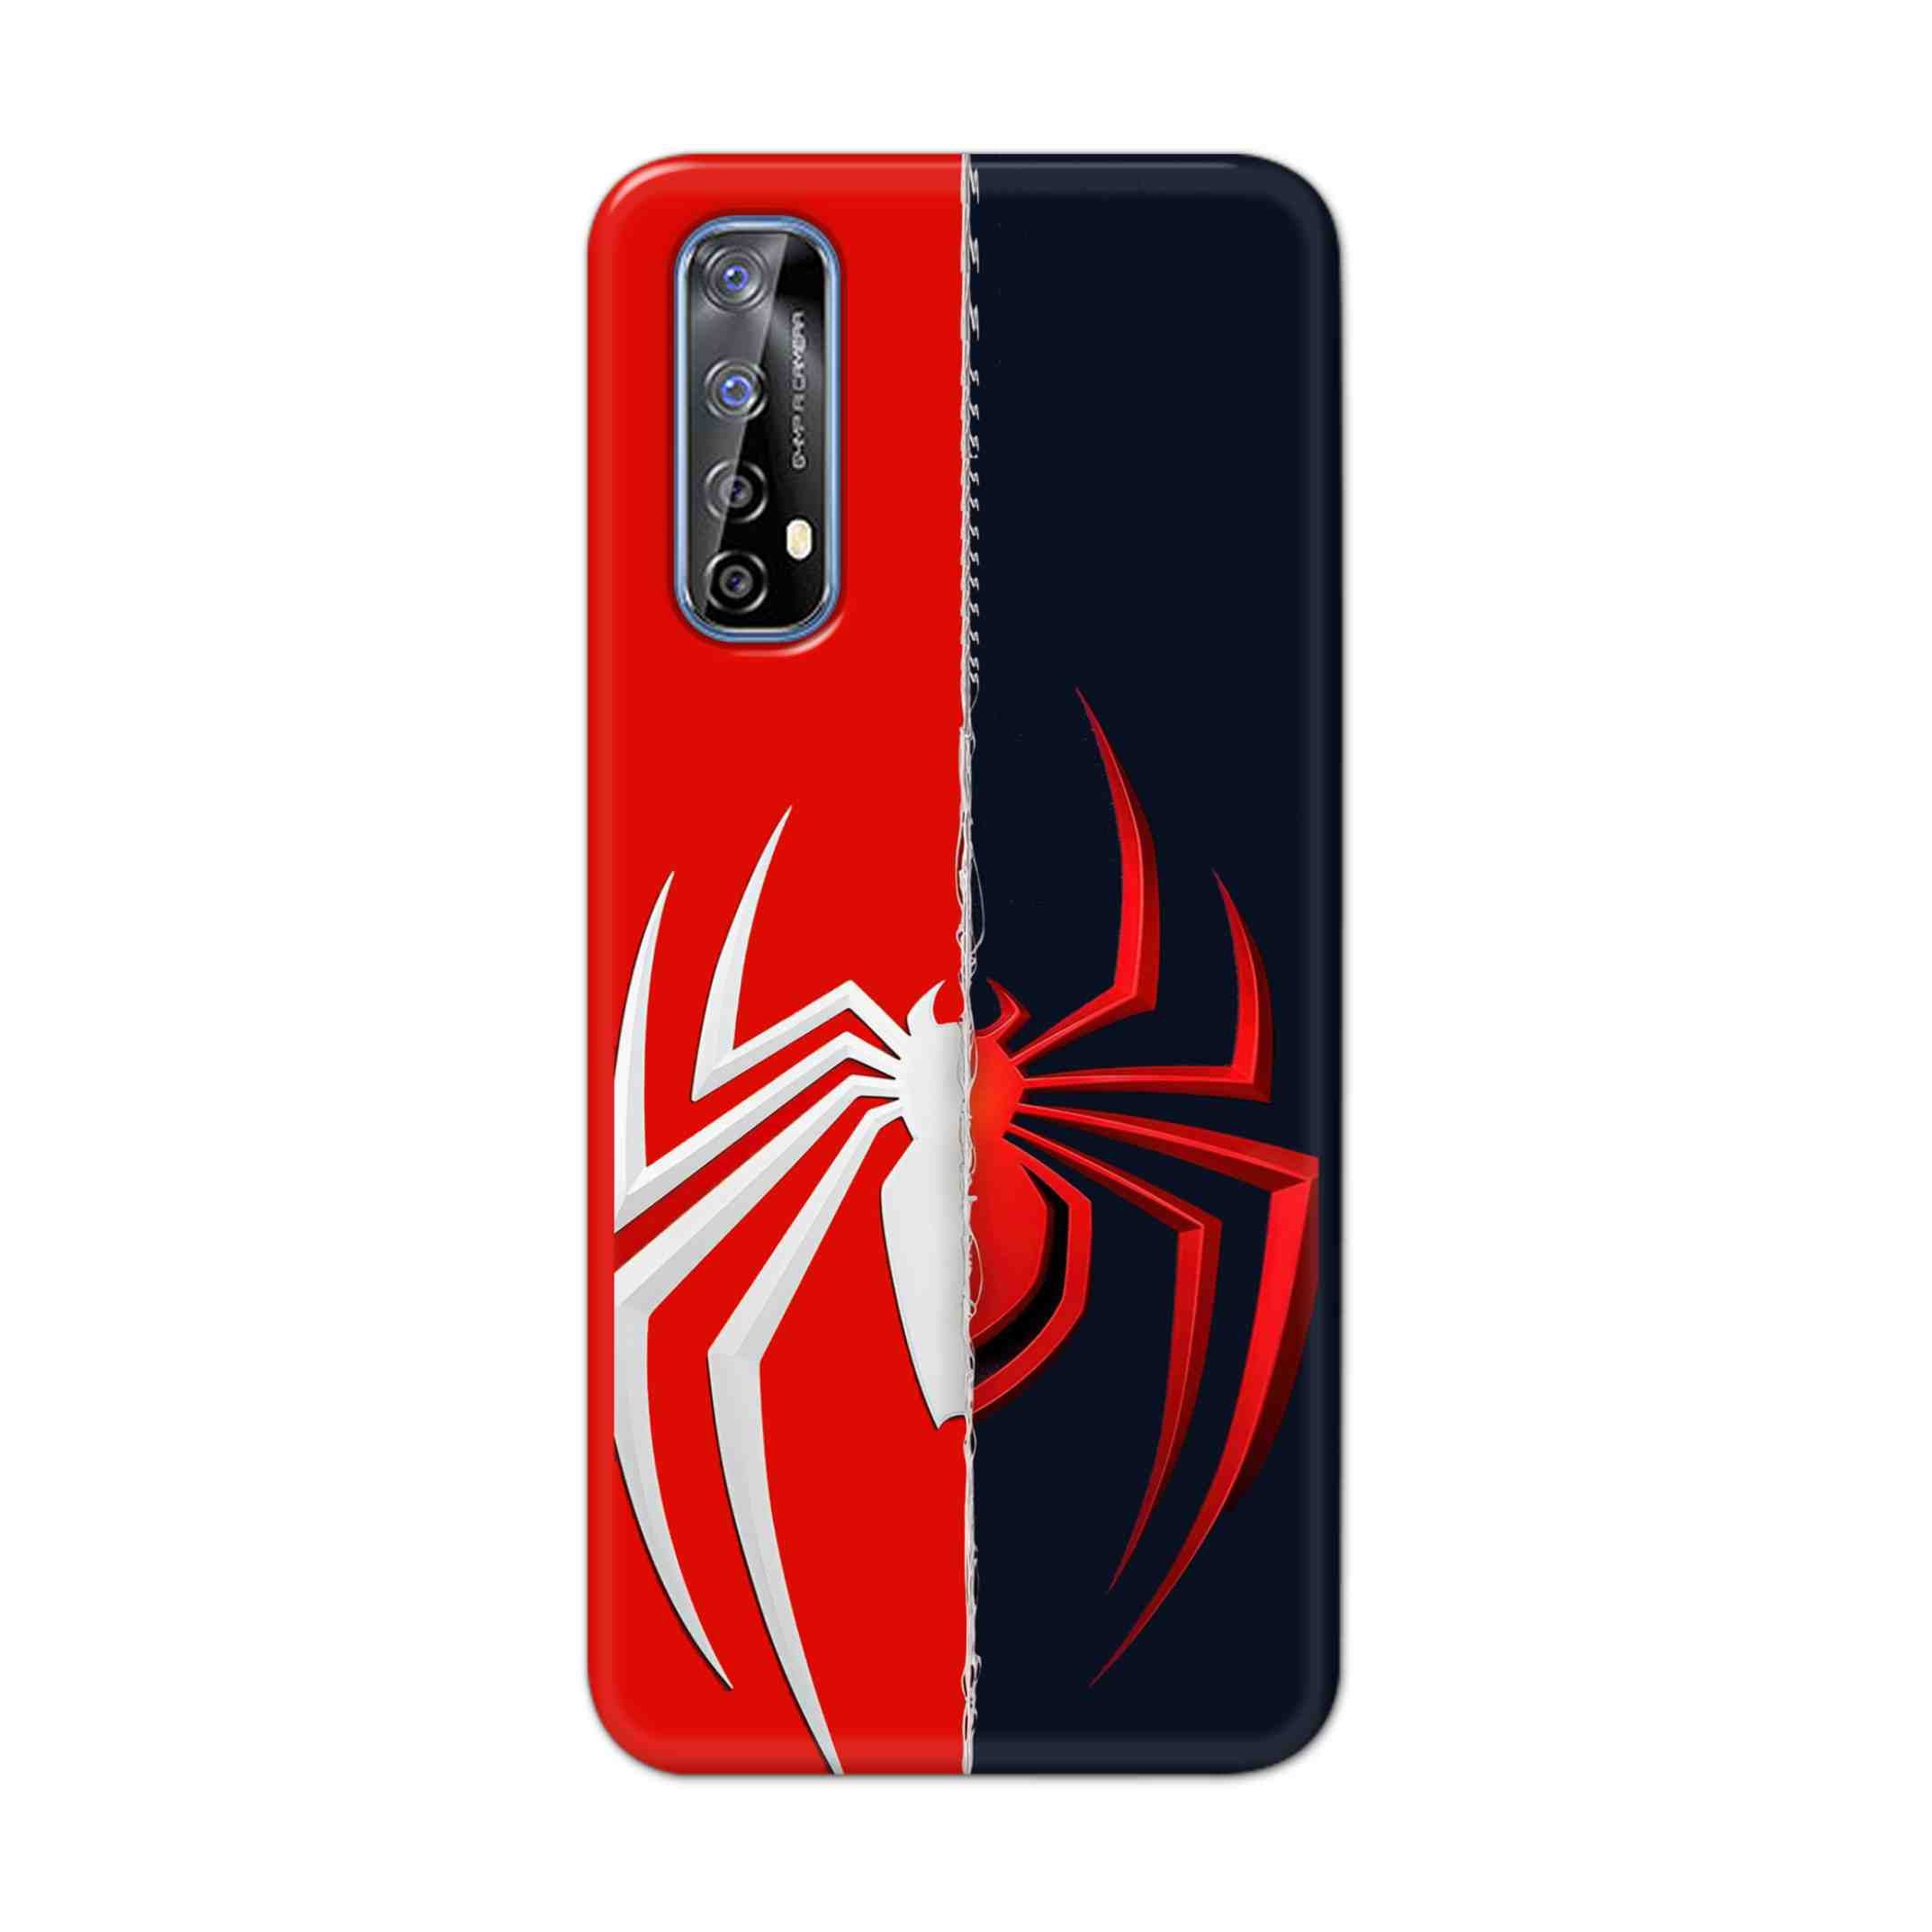 Buy Spademan Vs Venom Hard Back Mobile Phone Case Cover For Realme 7 Online